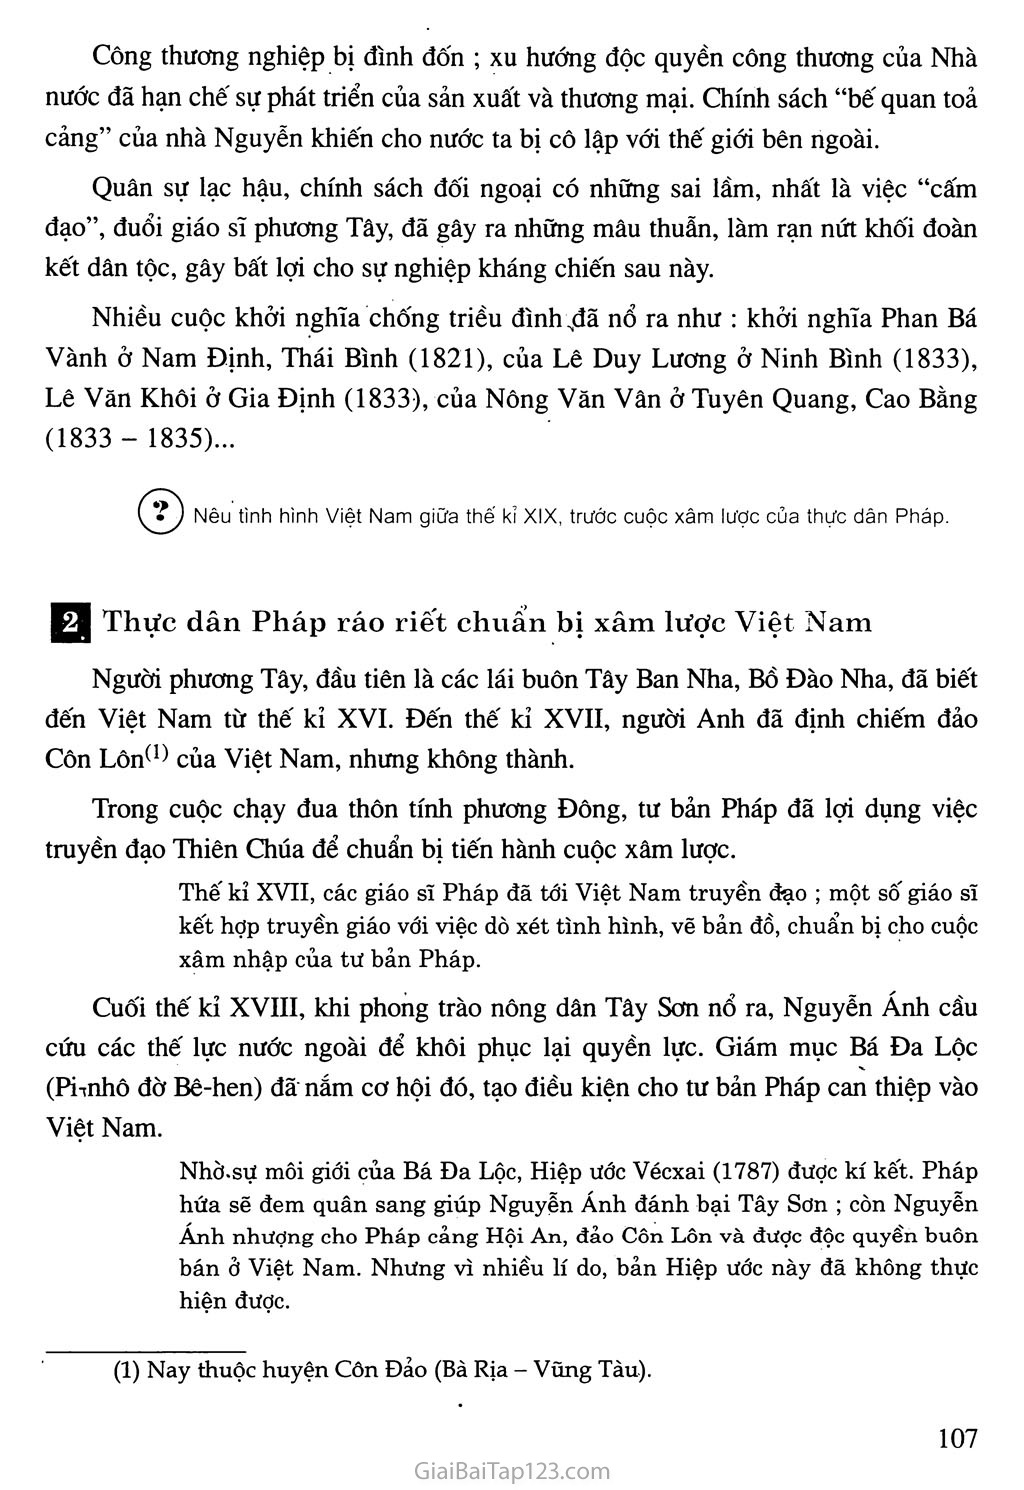 Bài 19. Nhân dân Việt Nam kháng chiến chống Pháp xâm lược (Từ năm 1858 đến trước năm 1873) trang 2